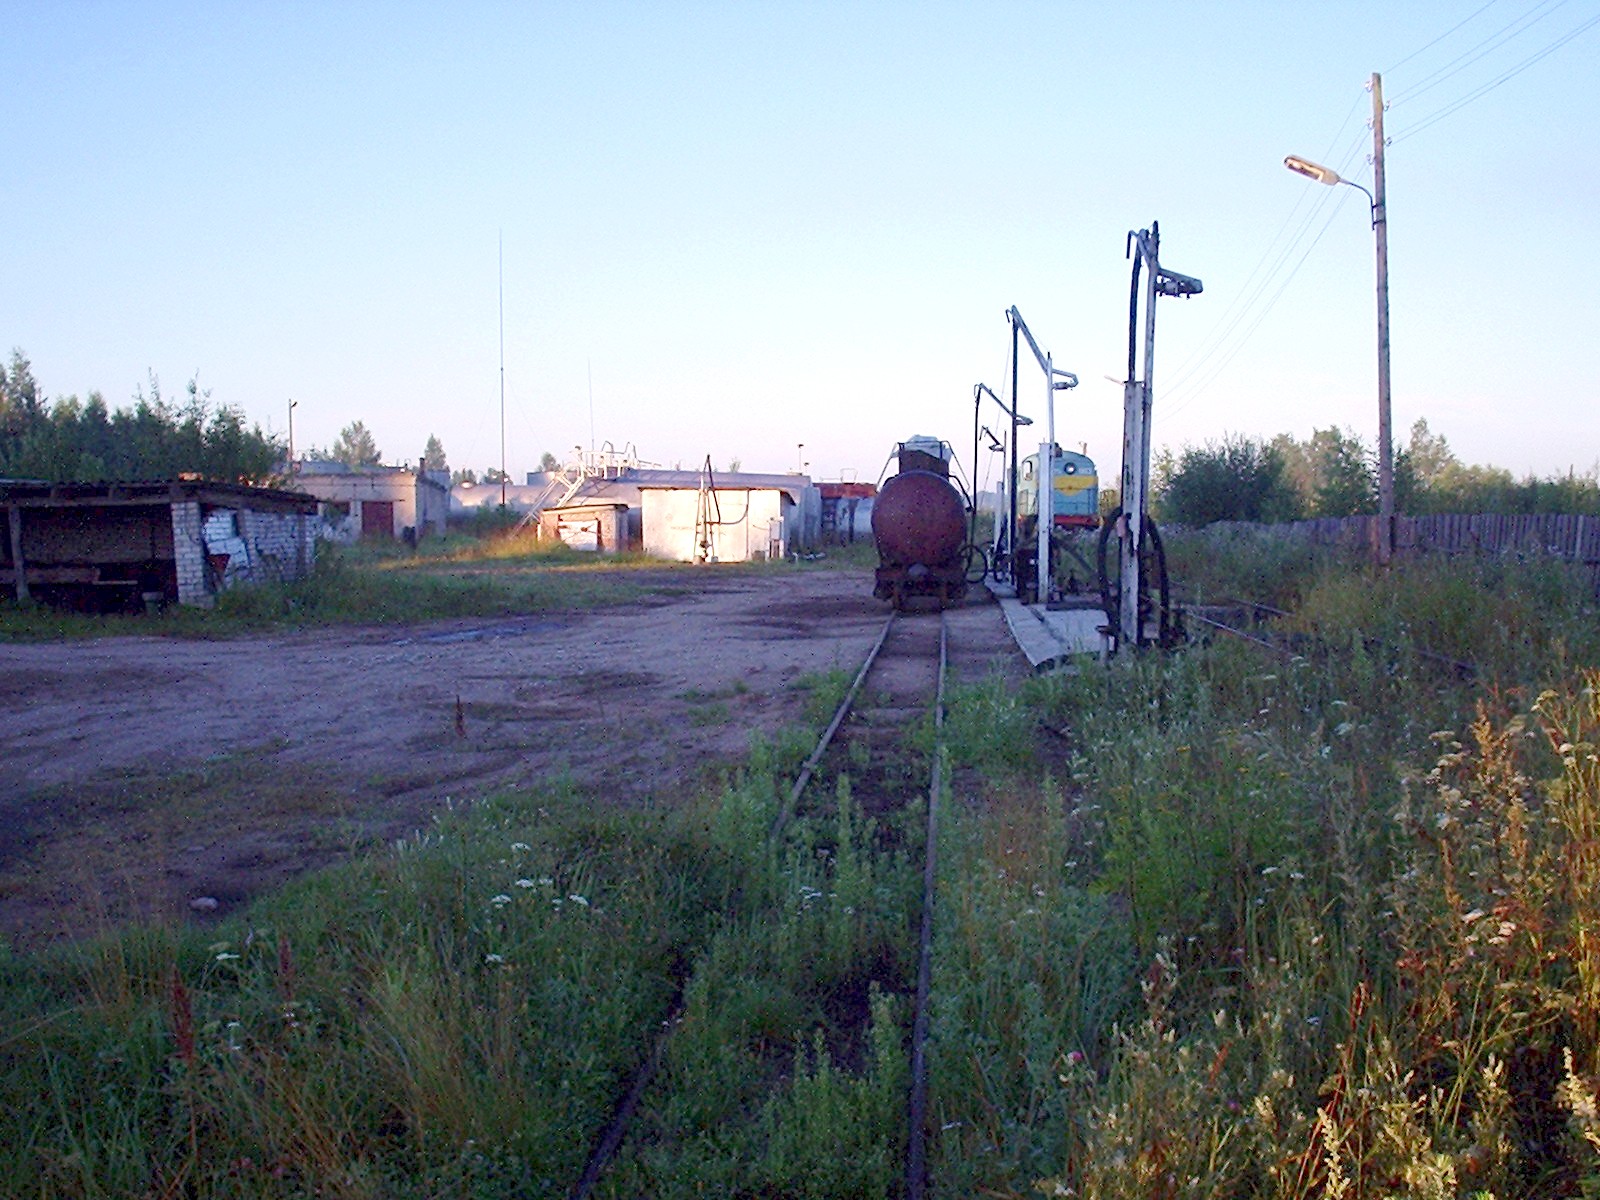 Узкоколейная железная дорога Васильевского предприятия промышленного железнодорожного транспорта  — фотографии, сделанные в 2005 году (часть 1)